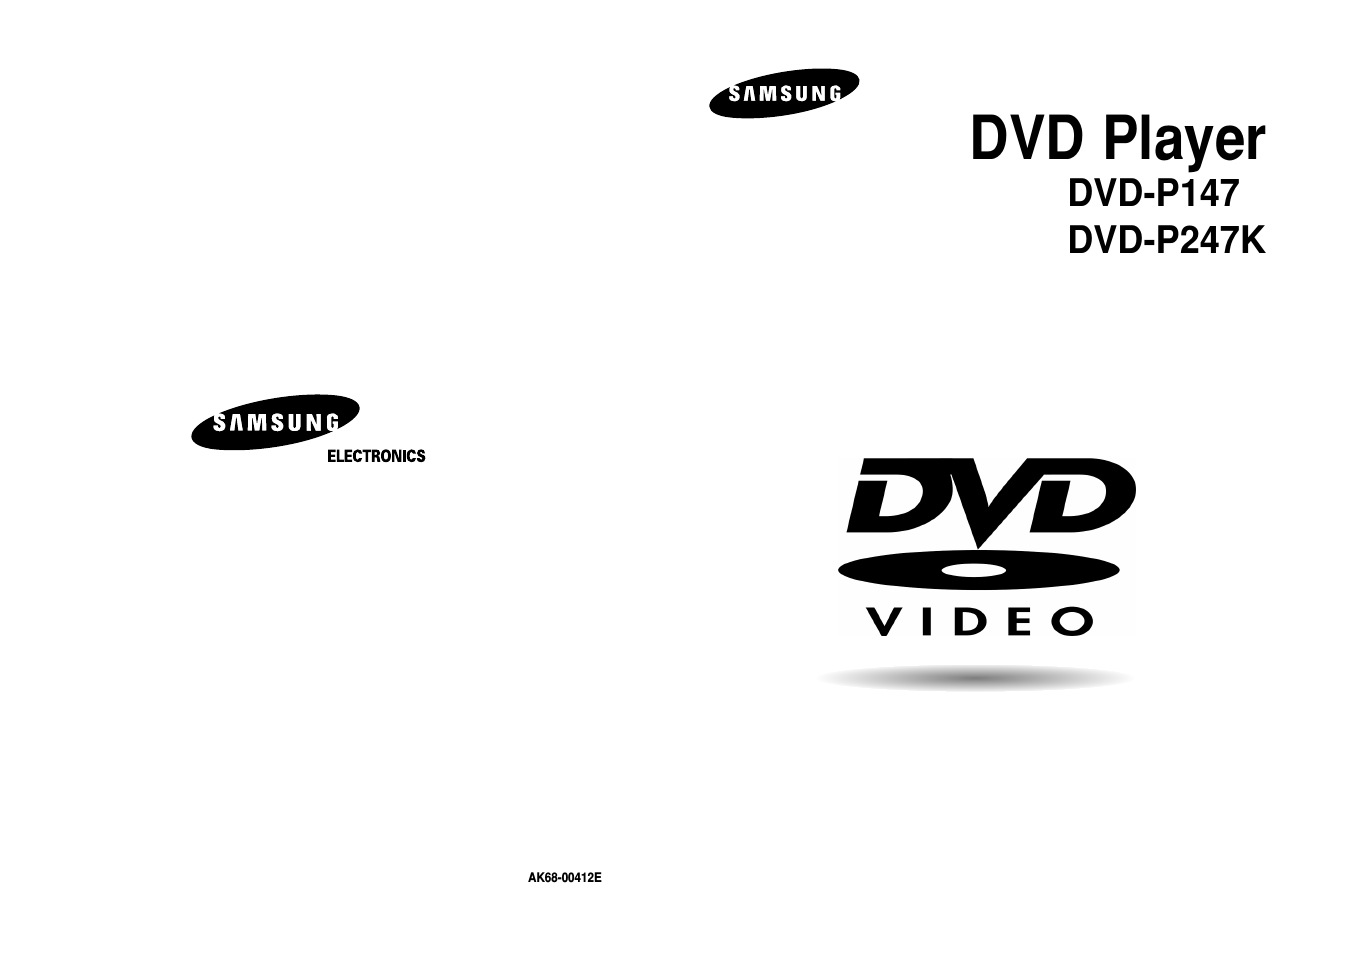 DVD-P147